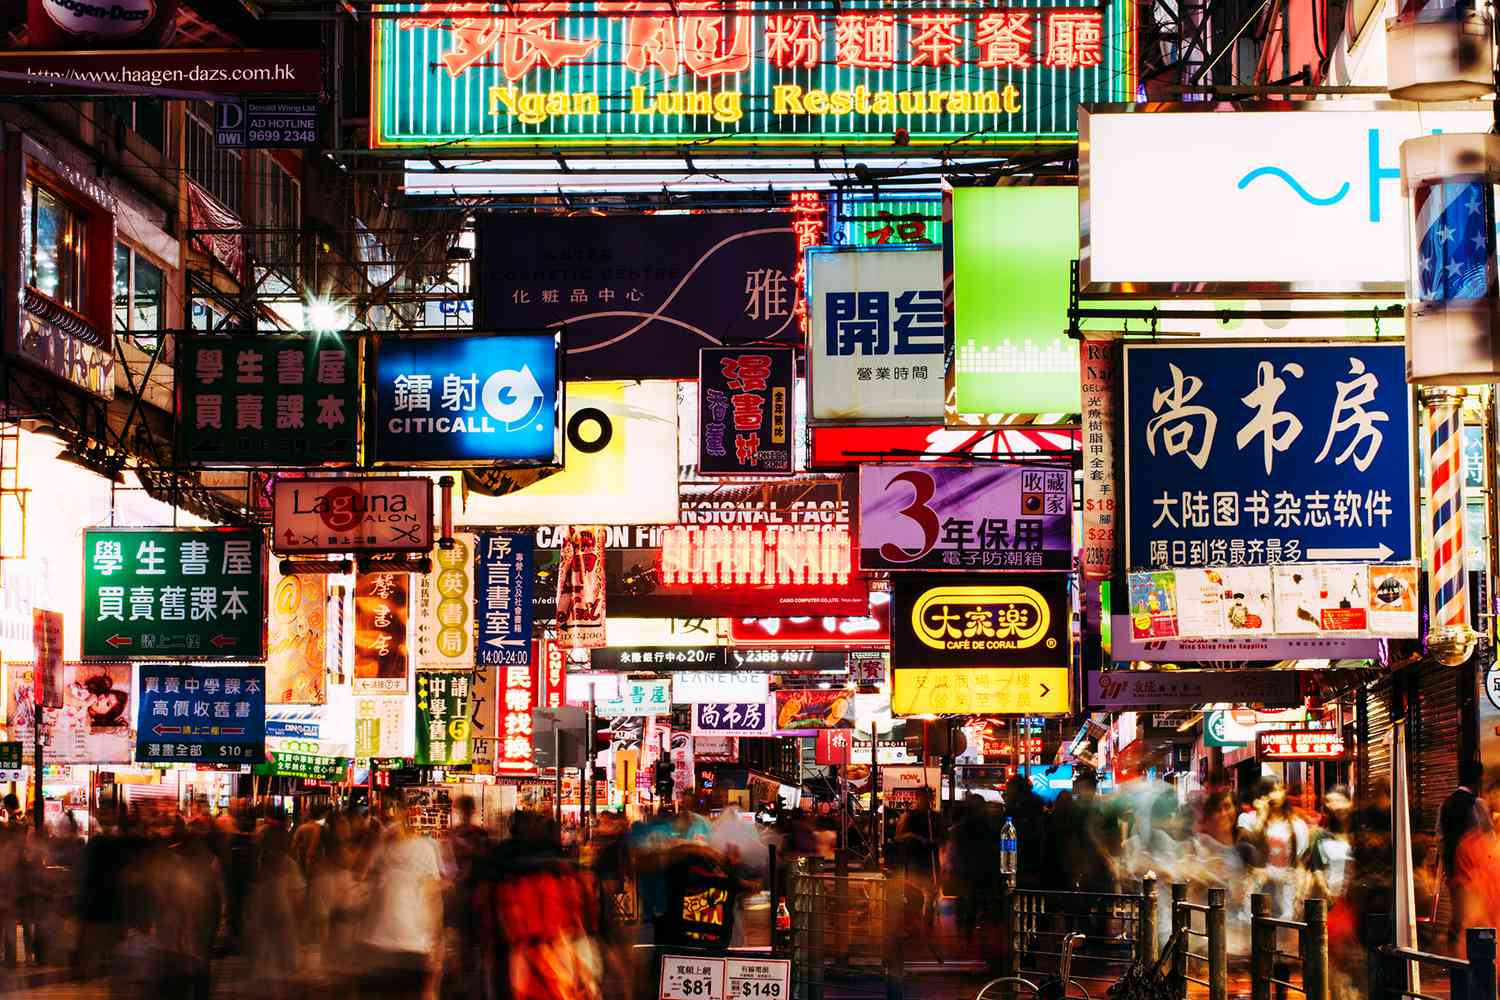 Văn hóa HongKong là sự giao thoa giữa phương Đông và phương Tây